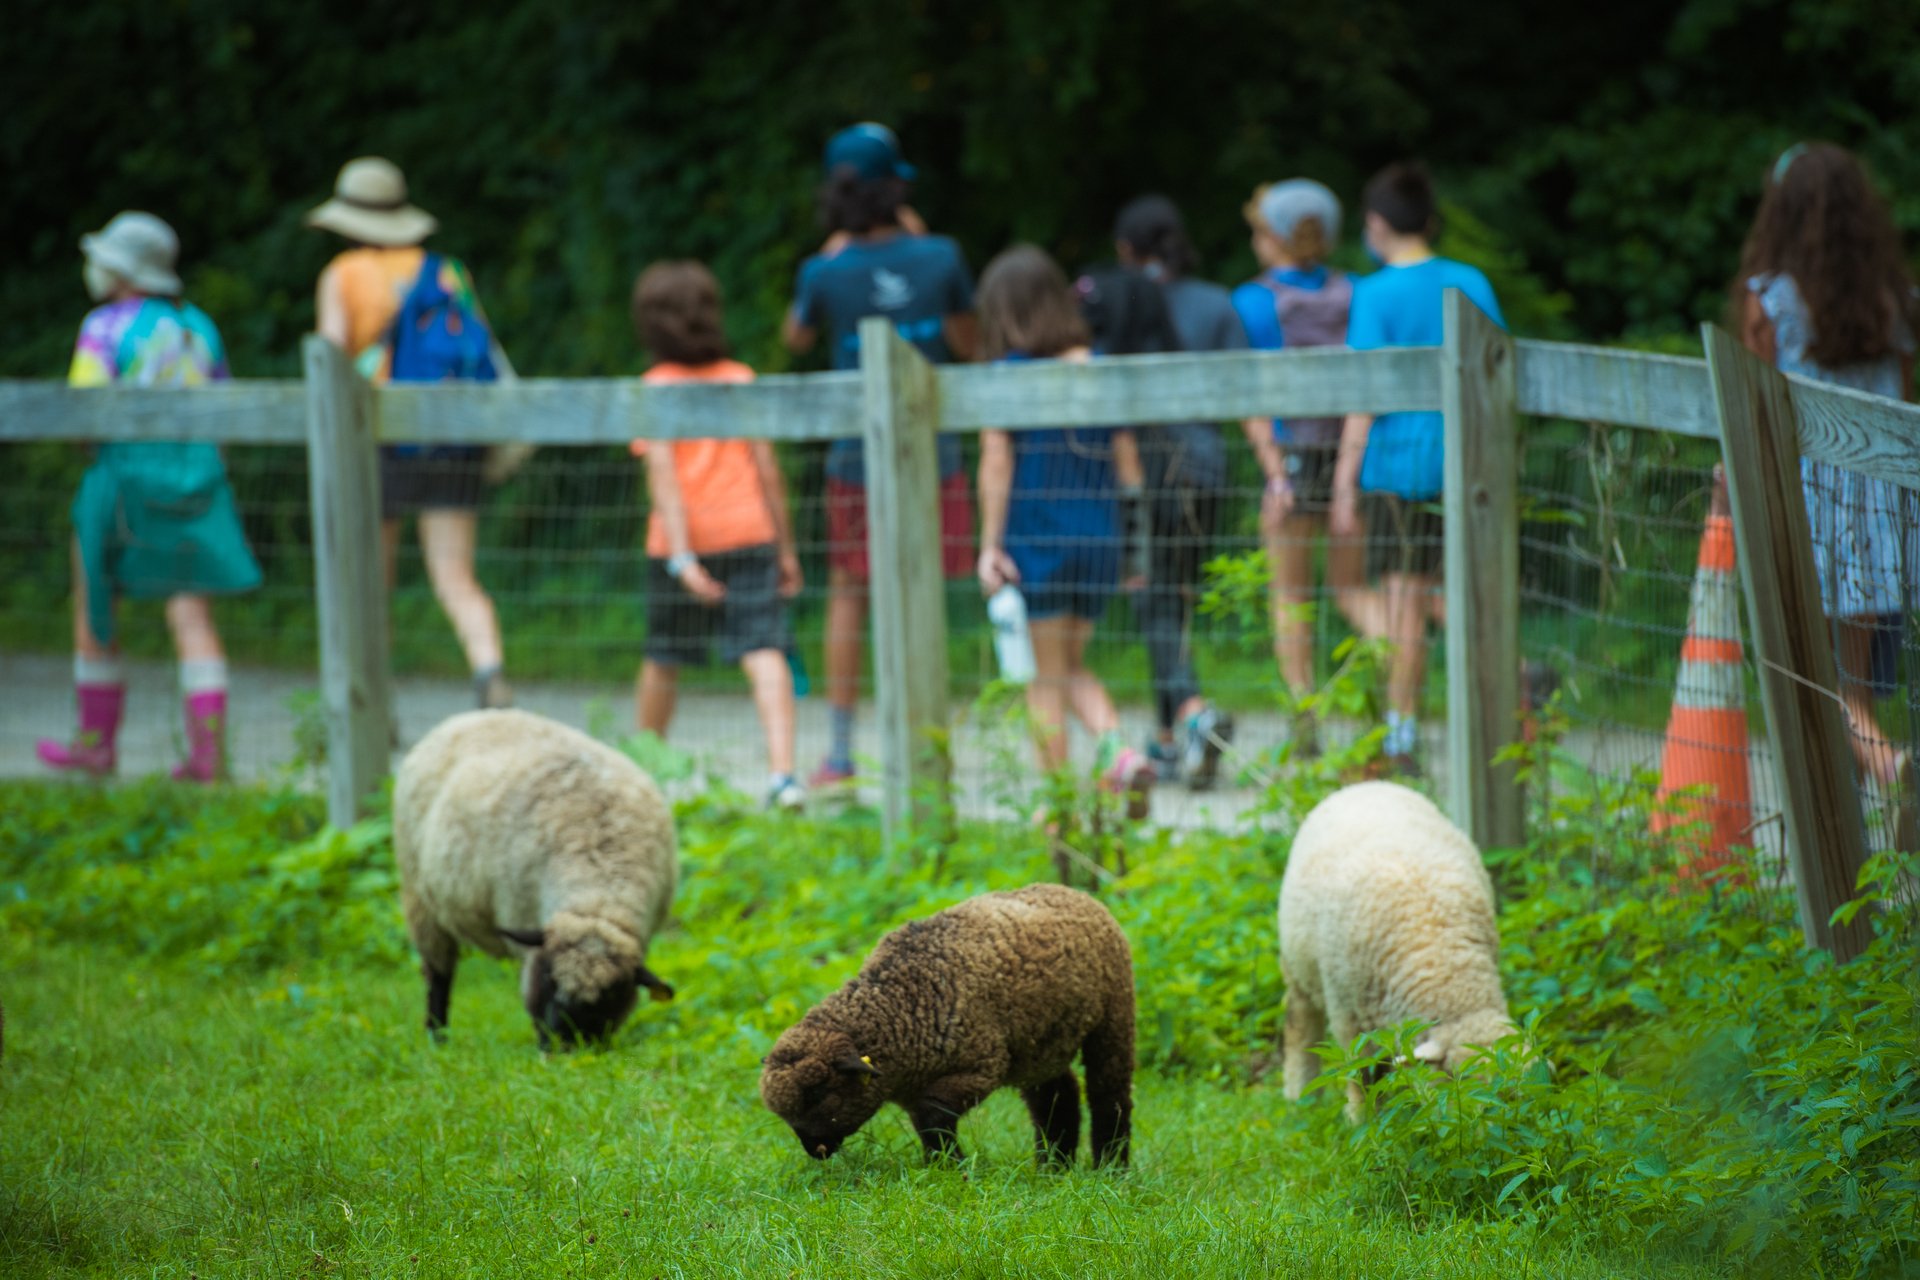 Campers walking at Drumlin Farm behind sheep enclosure